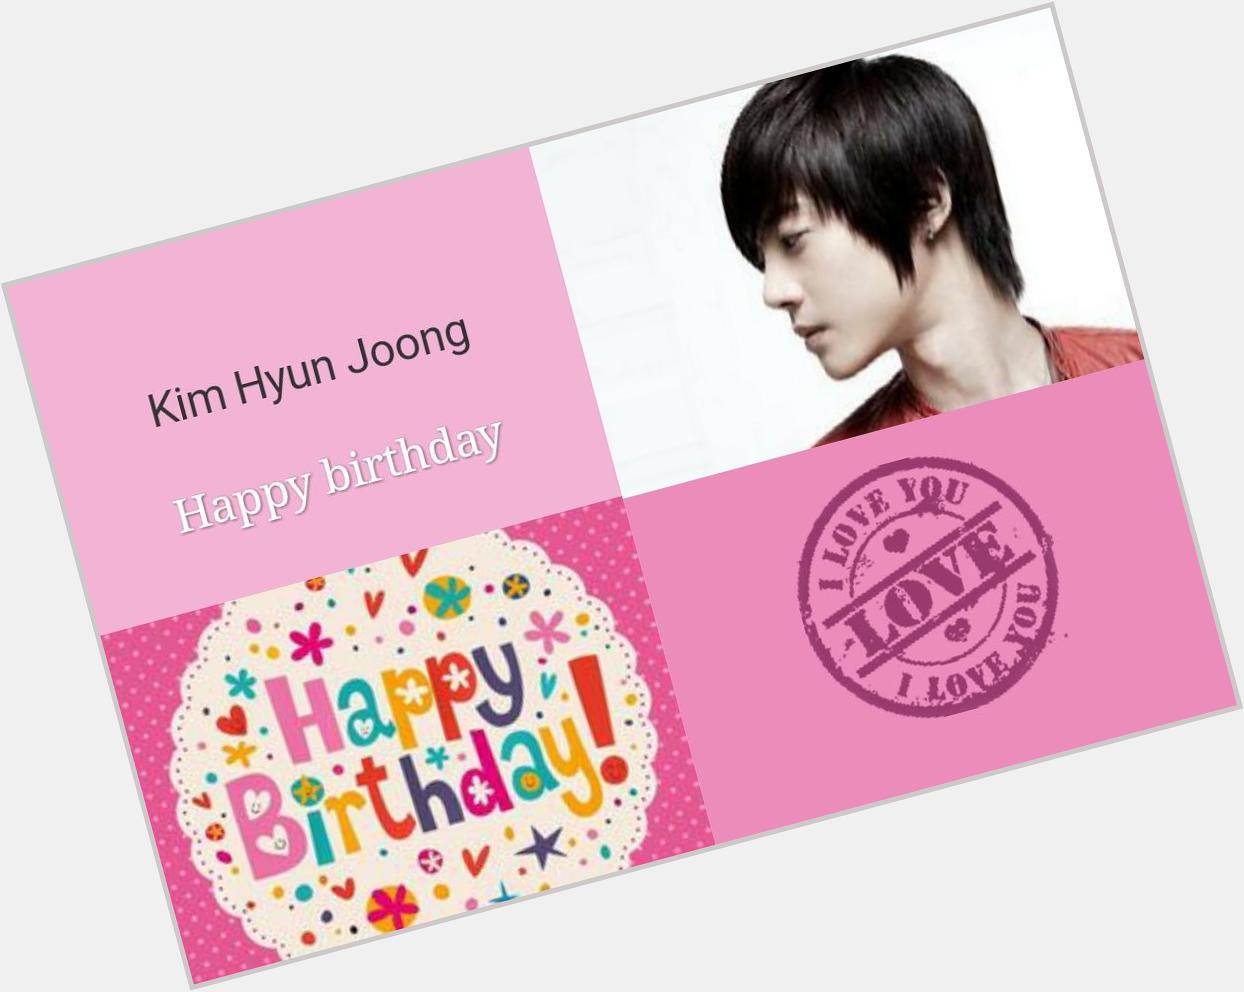 # Kim Hyun Joong....Happy birthday  